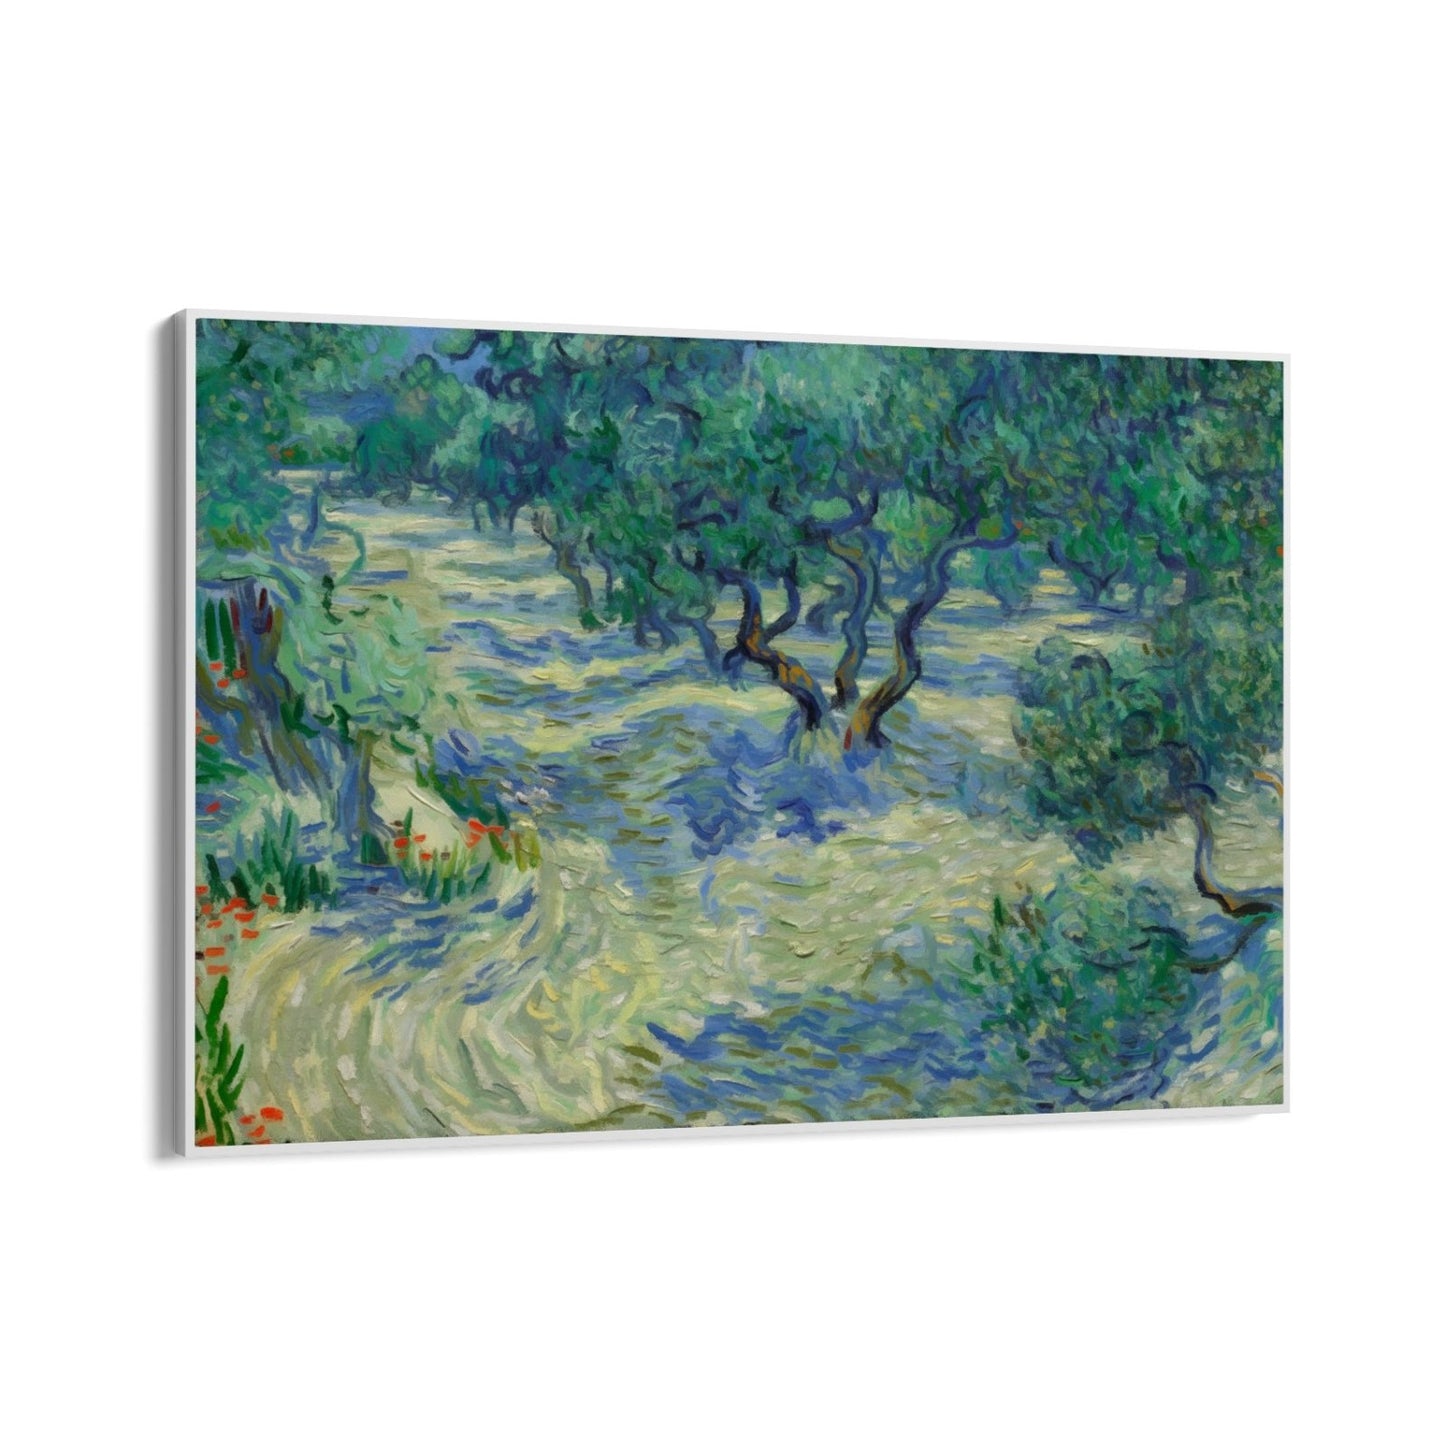 Huerto de olivos 1889, Vincent Van Gogh